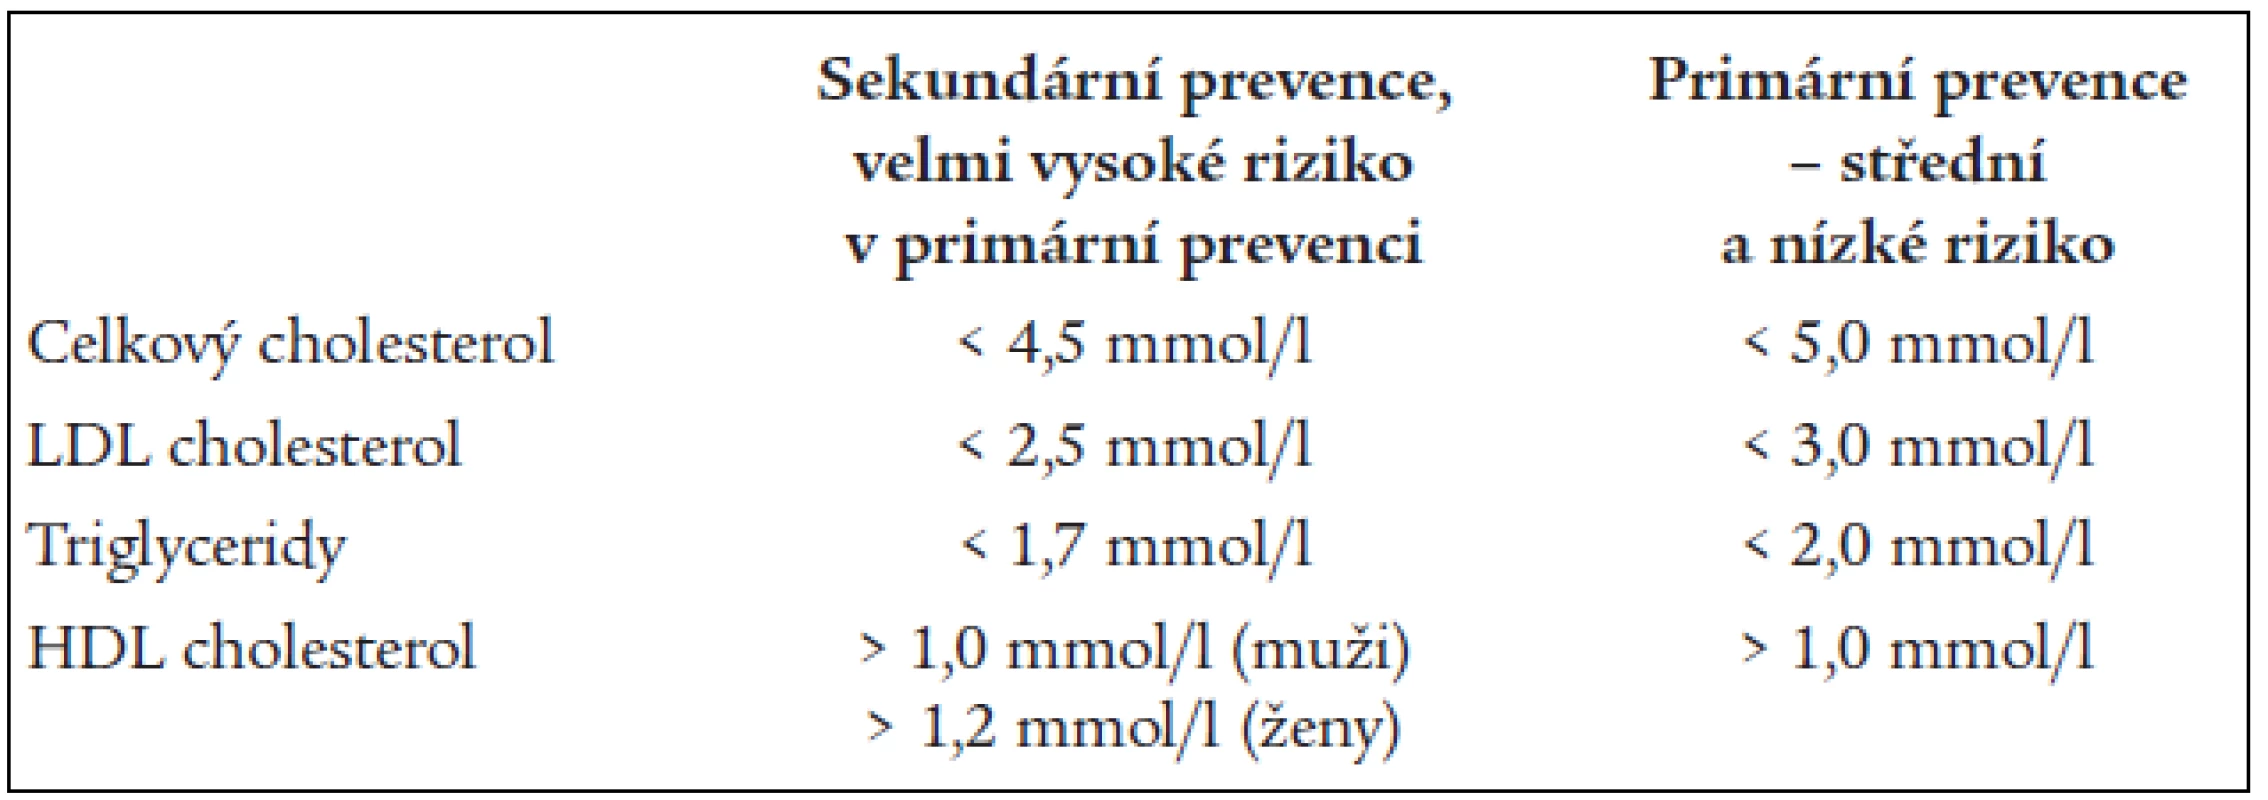 Cílové hodnoty krevních lipidů podle doporučení z roku 2003.